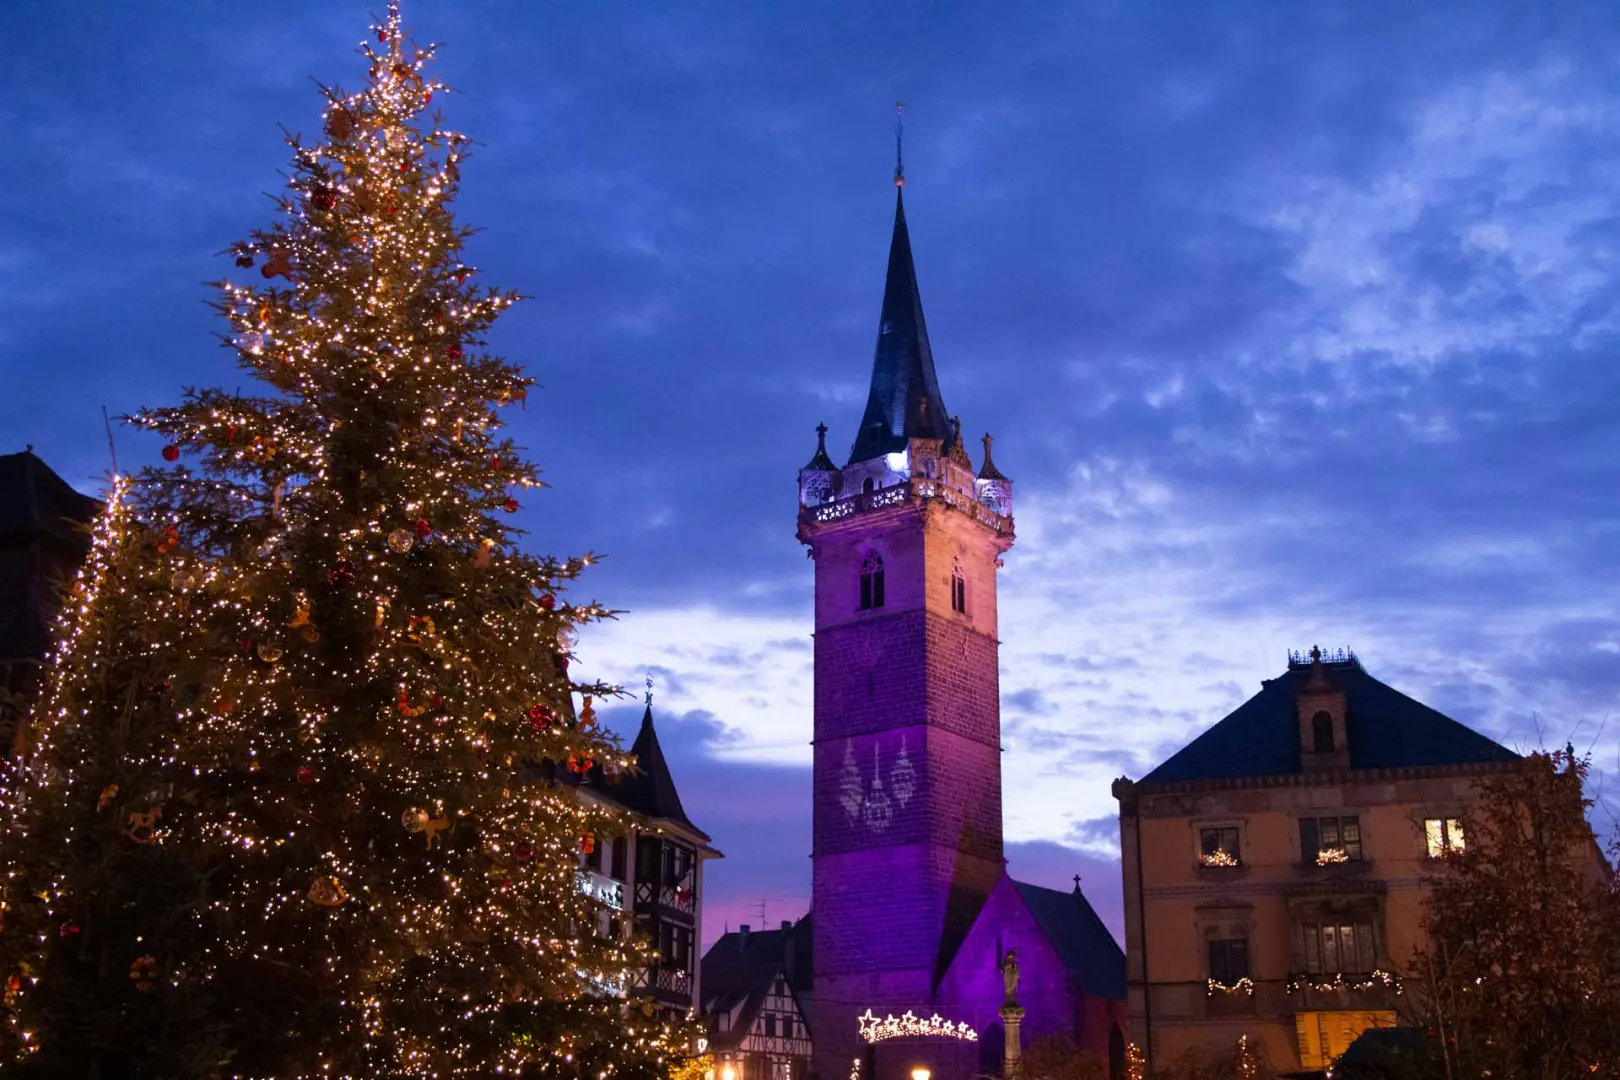 Vive la magia de la navidad en los pueblos más bonitos de esta región francesa. Llenos de viñedos y un ambiente mágico. Iremos a Colmar, Friburgo...